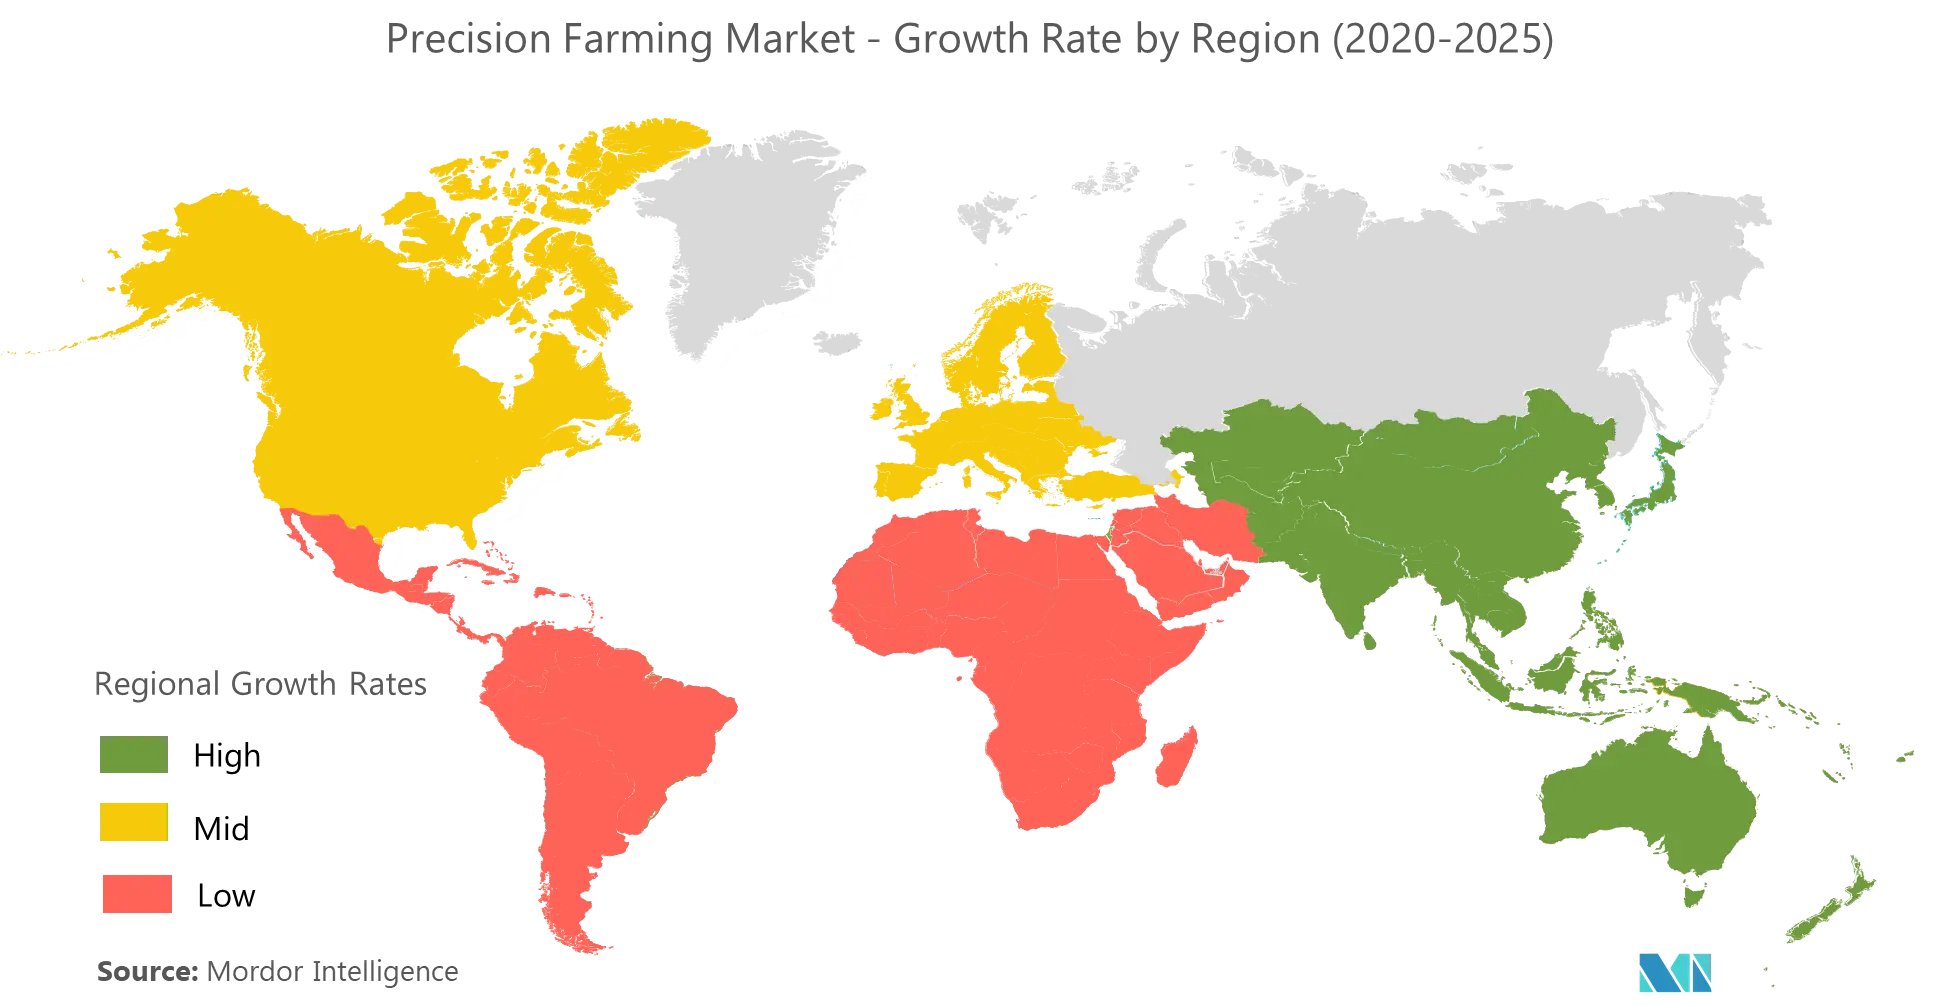 precision farming market size